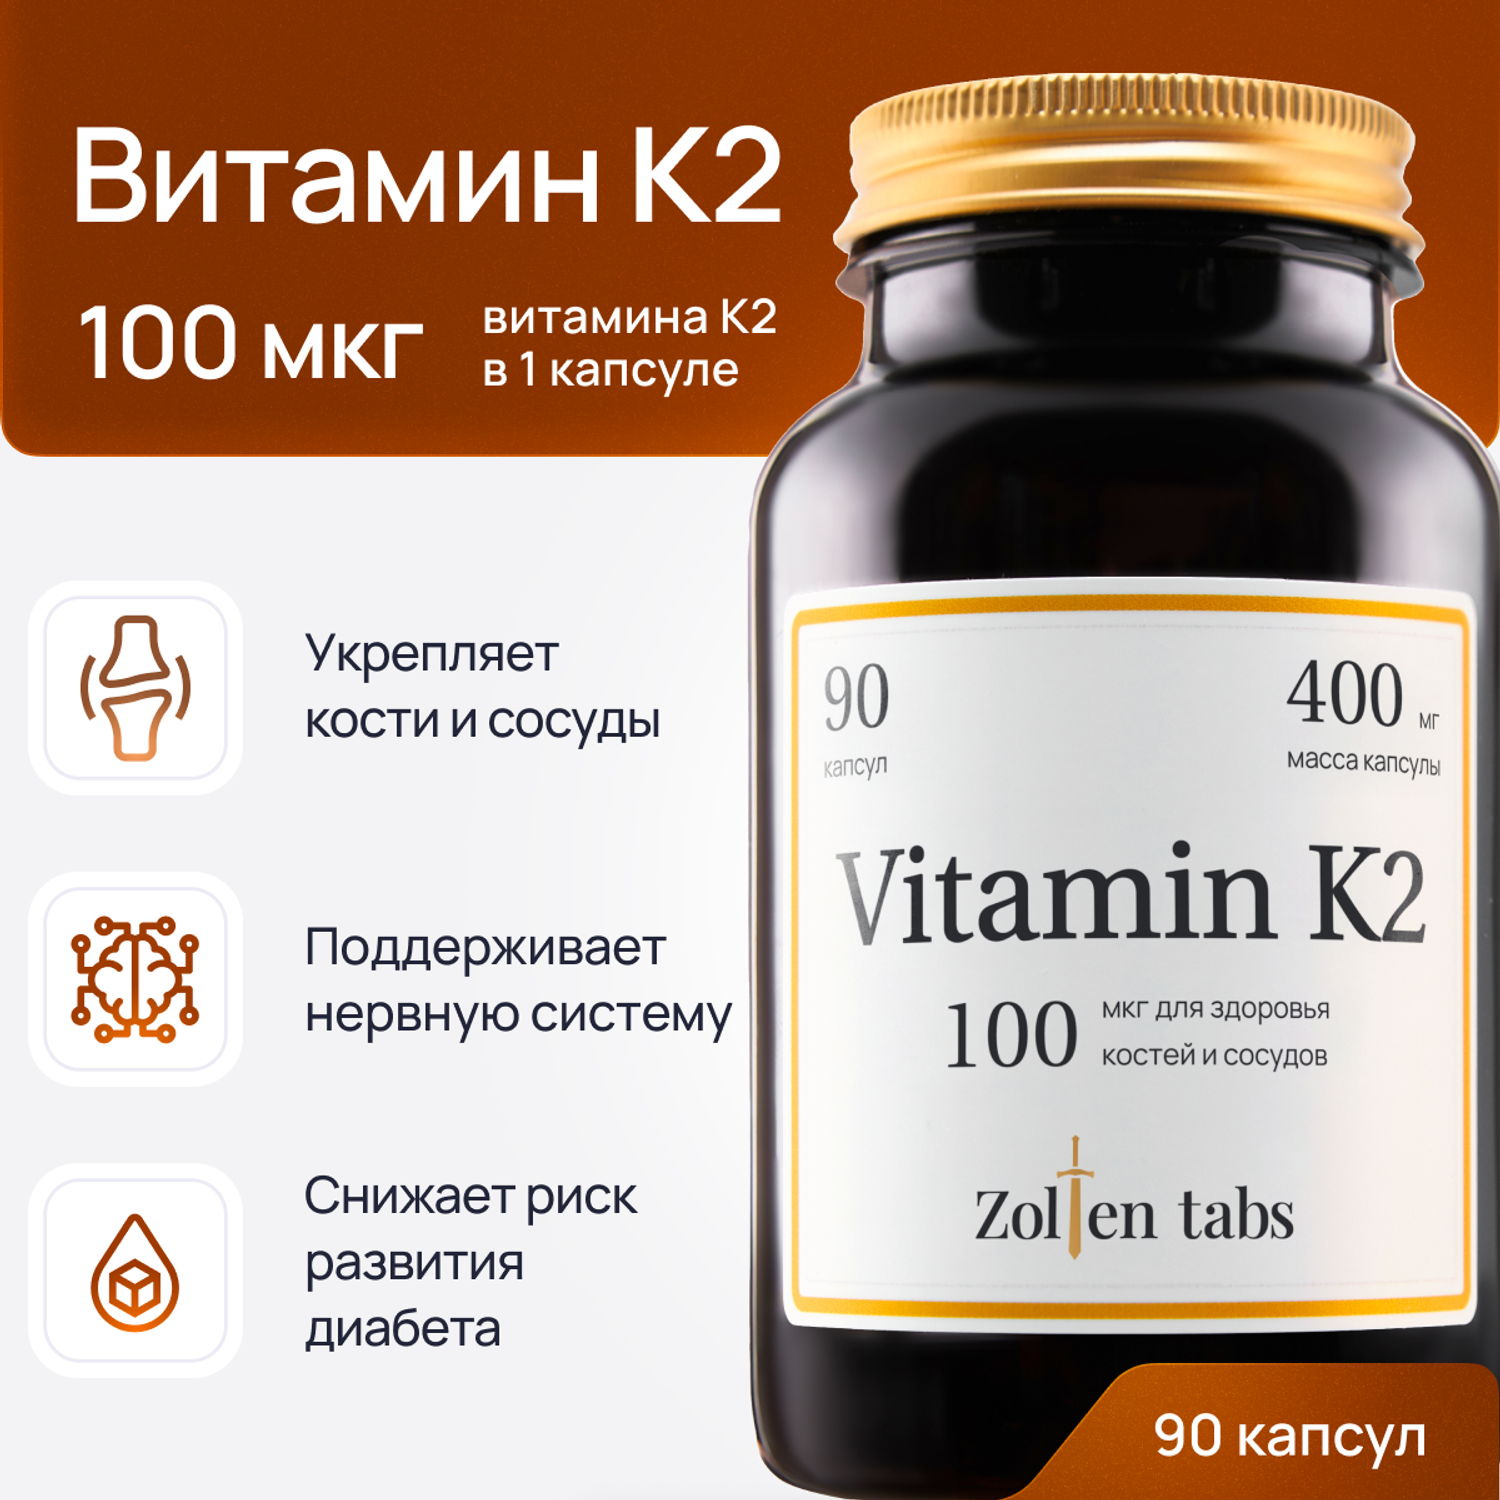 Витамин К2 Zolten Tabs БАД для здоровья костей и сосудов менахинон-7 90 капсул - фото 1